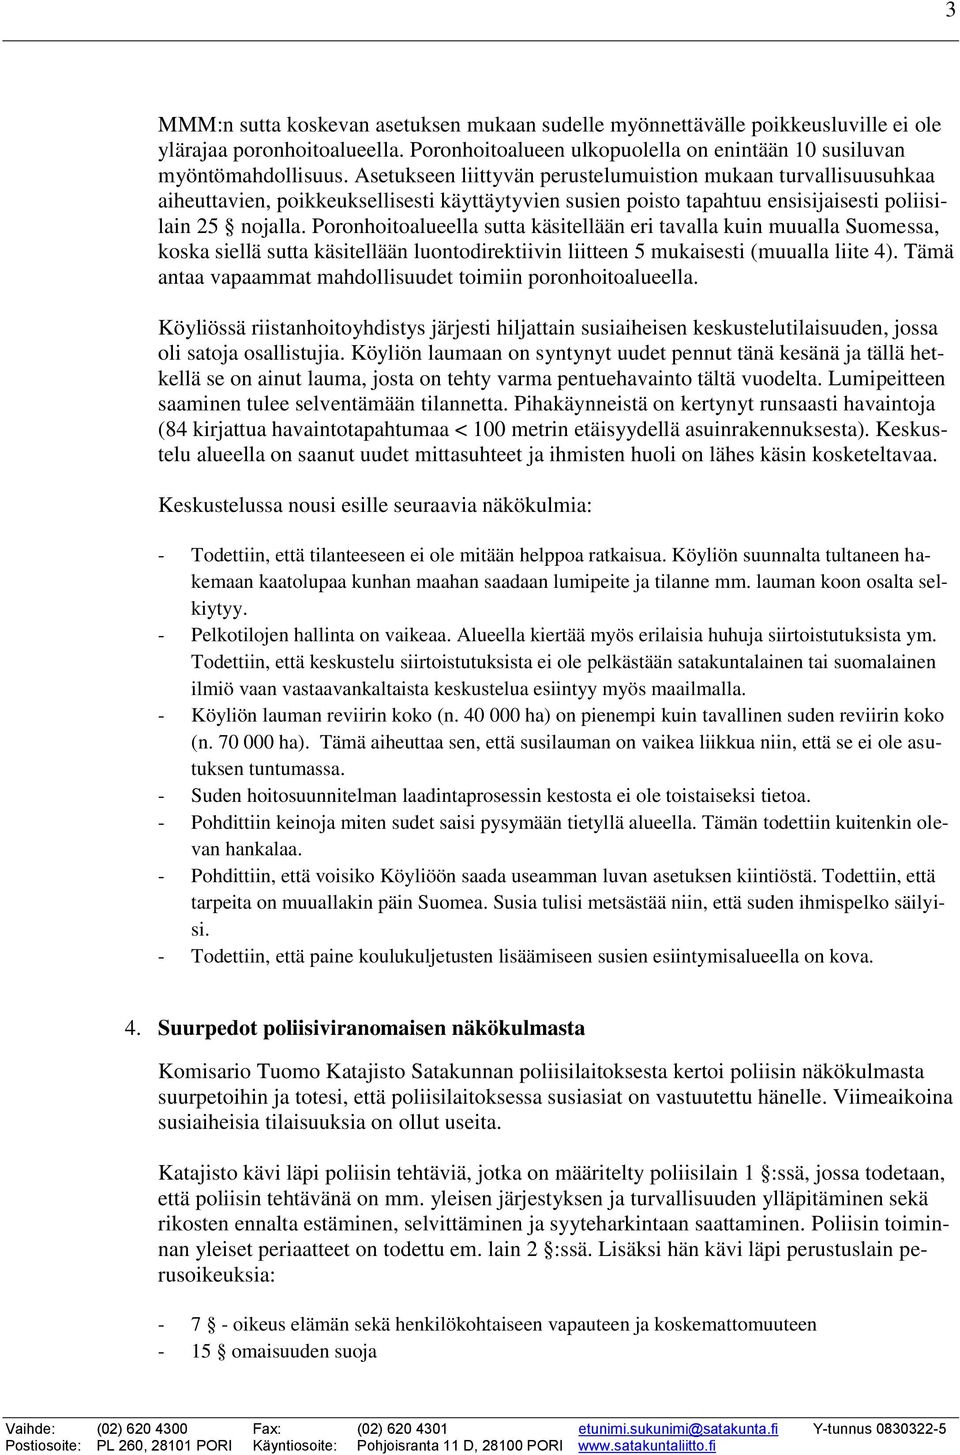 Poronhoitoalueella sutta käsitellään eri tavalla kuin muualla Suomessa, koska siellä sutta käsitellään luontodirektiivin liitteen 5 mukaisesti (muualla liite 4).